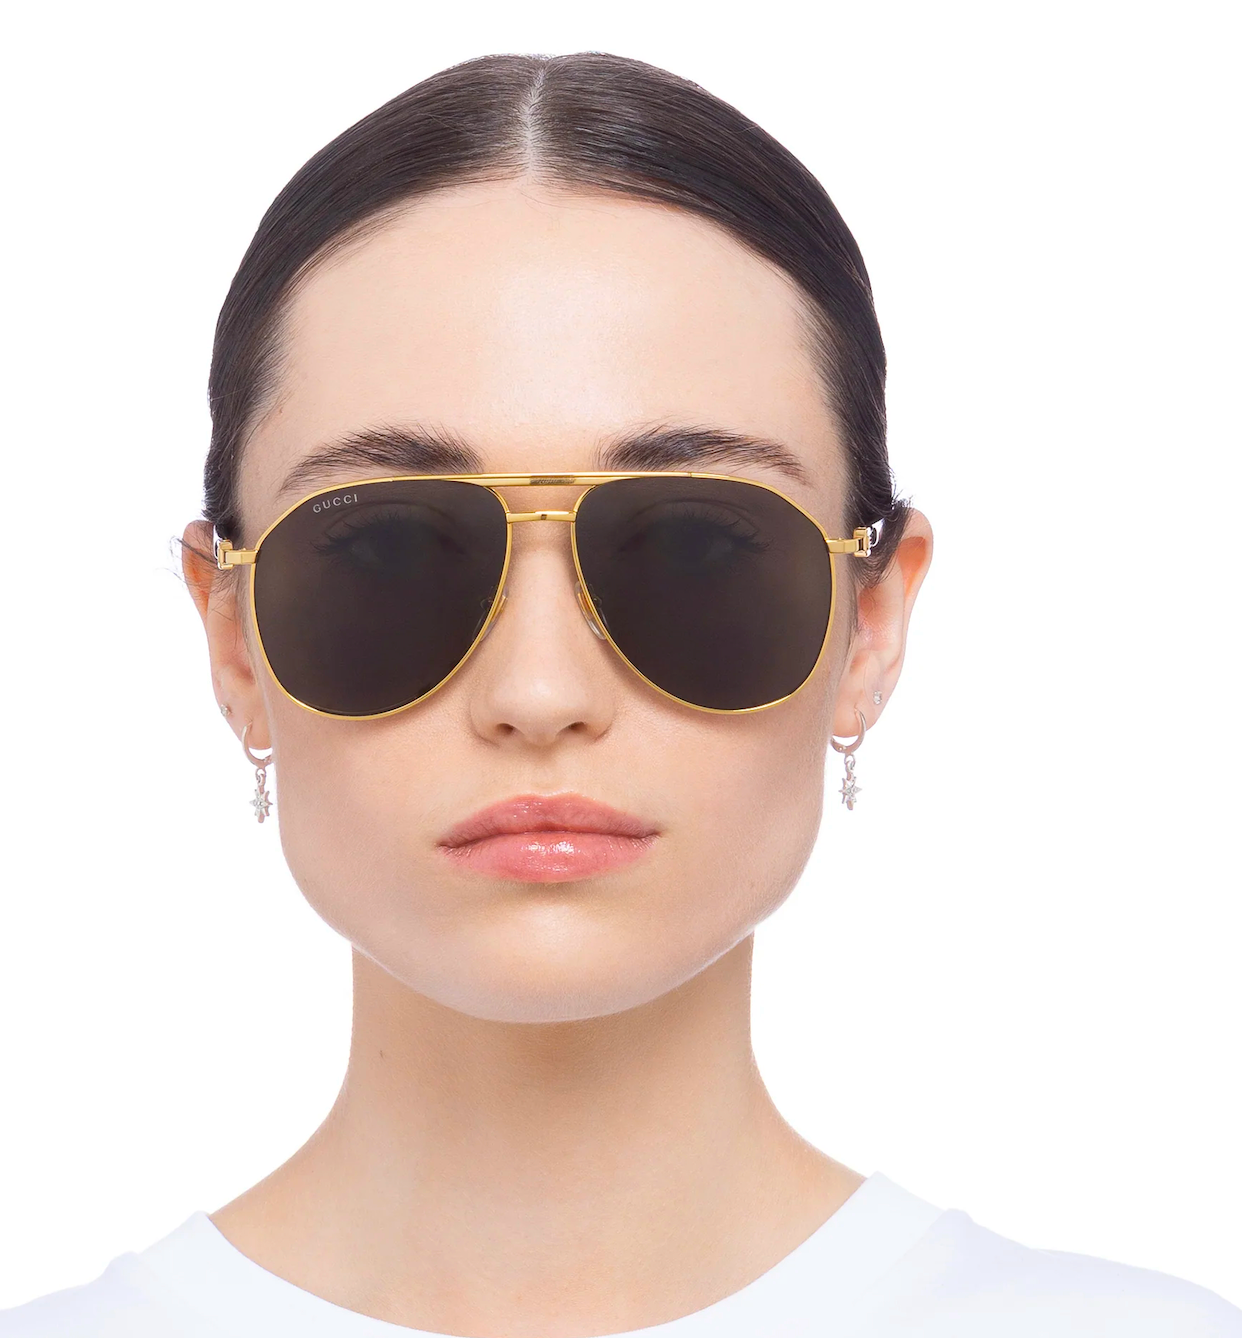 Gucci GG1220S-001 59mm New Sunglasses